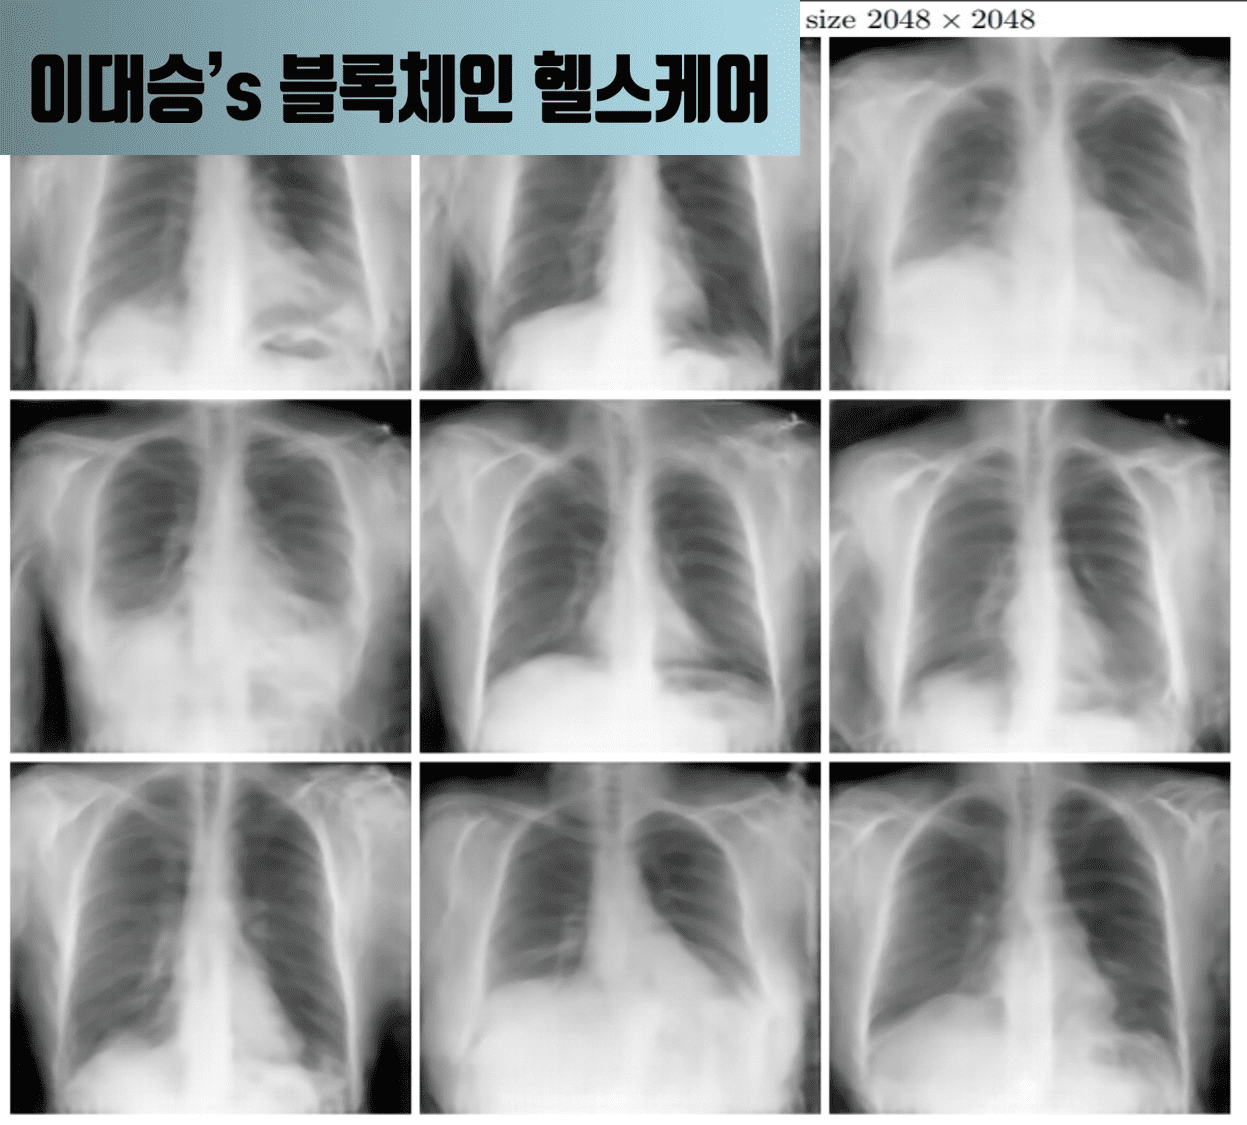 [이대승] What if my x-ray pictures are secretly leaking?